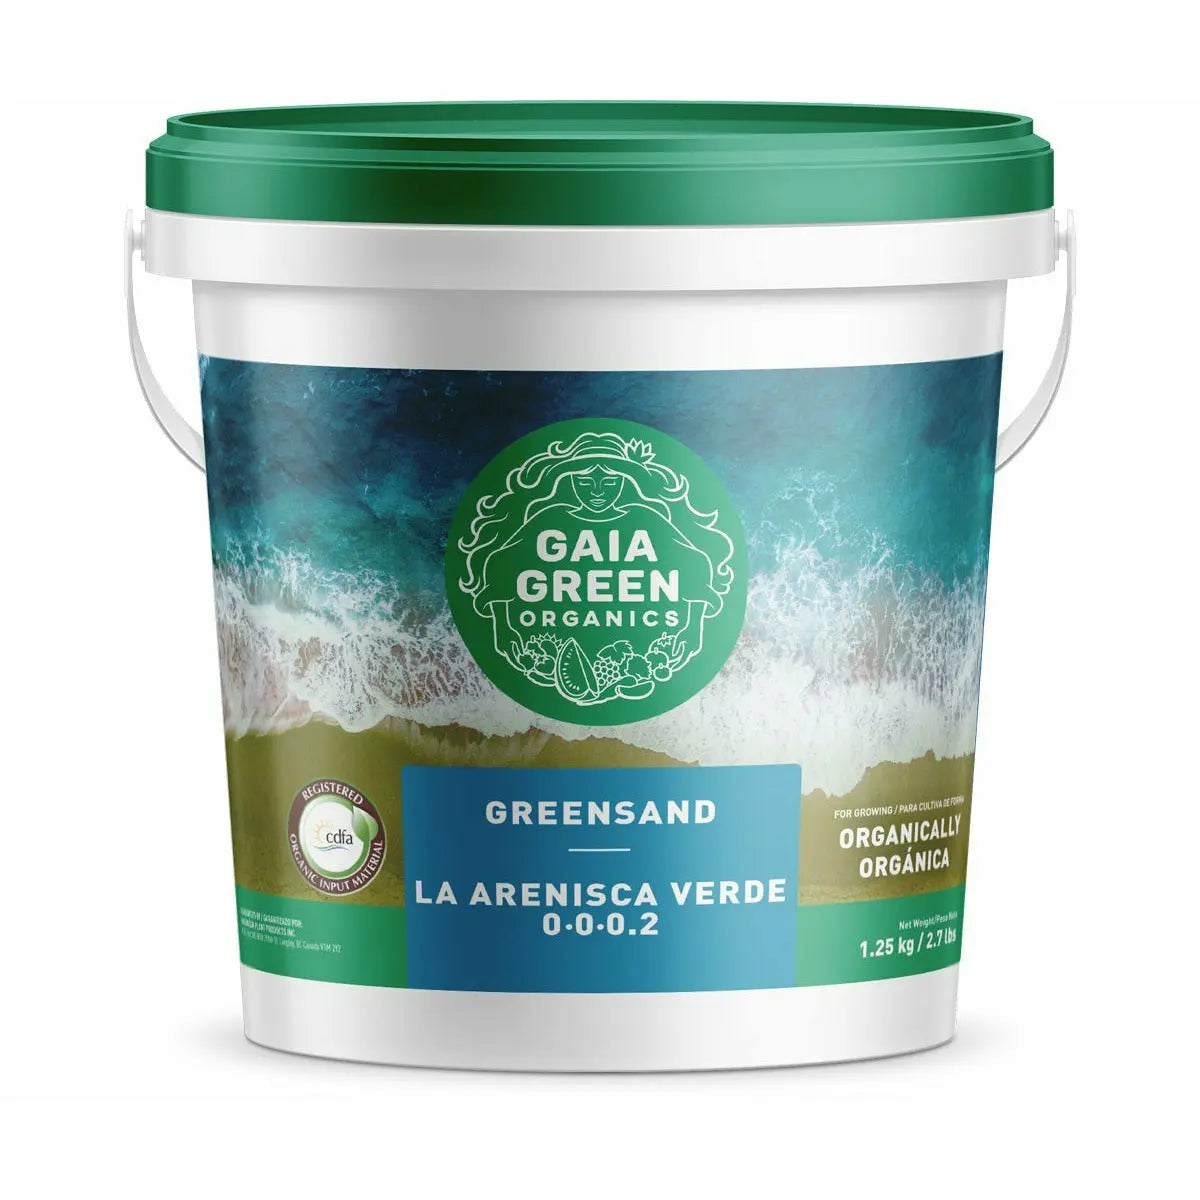 Gaia Green Greensand, 1.5 kg Gaia Green